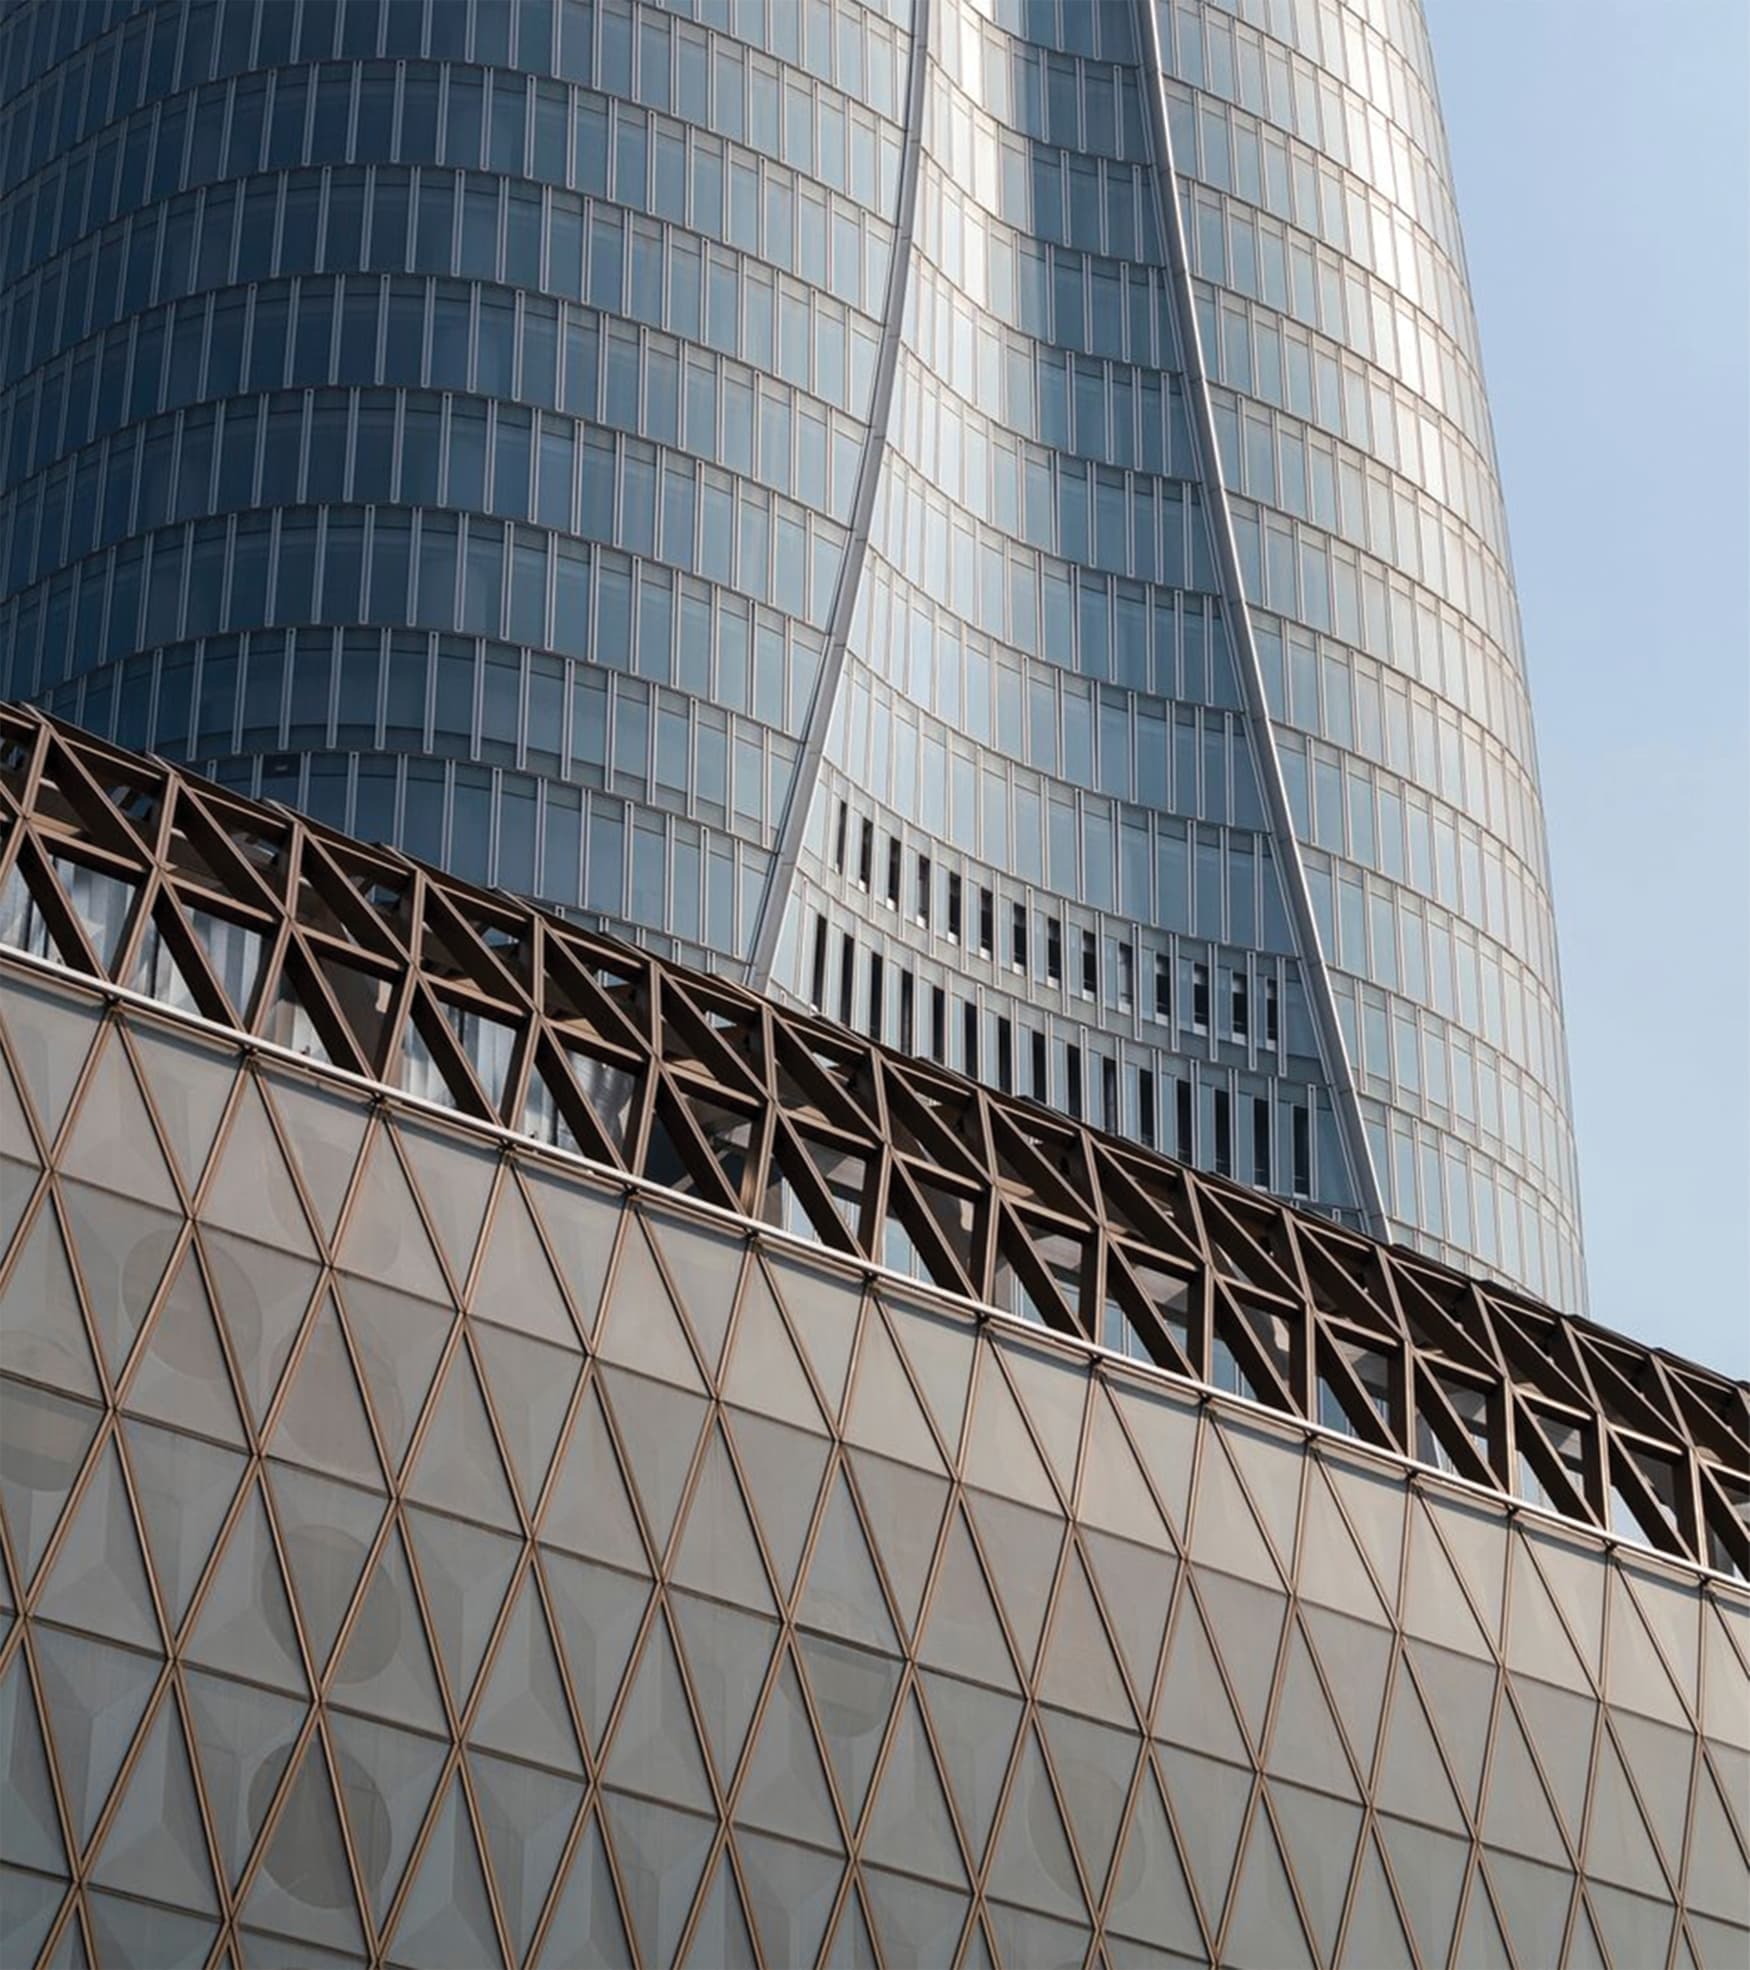 K11, located in Tianjin, China, is a super high-rise complex development